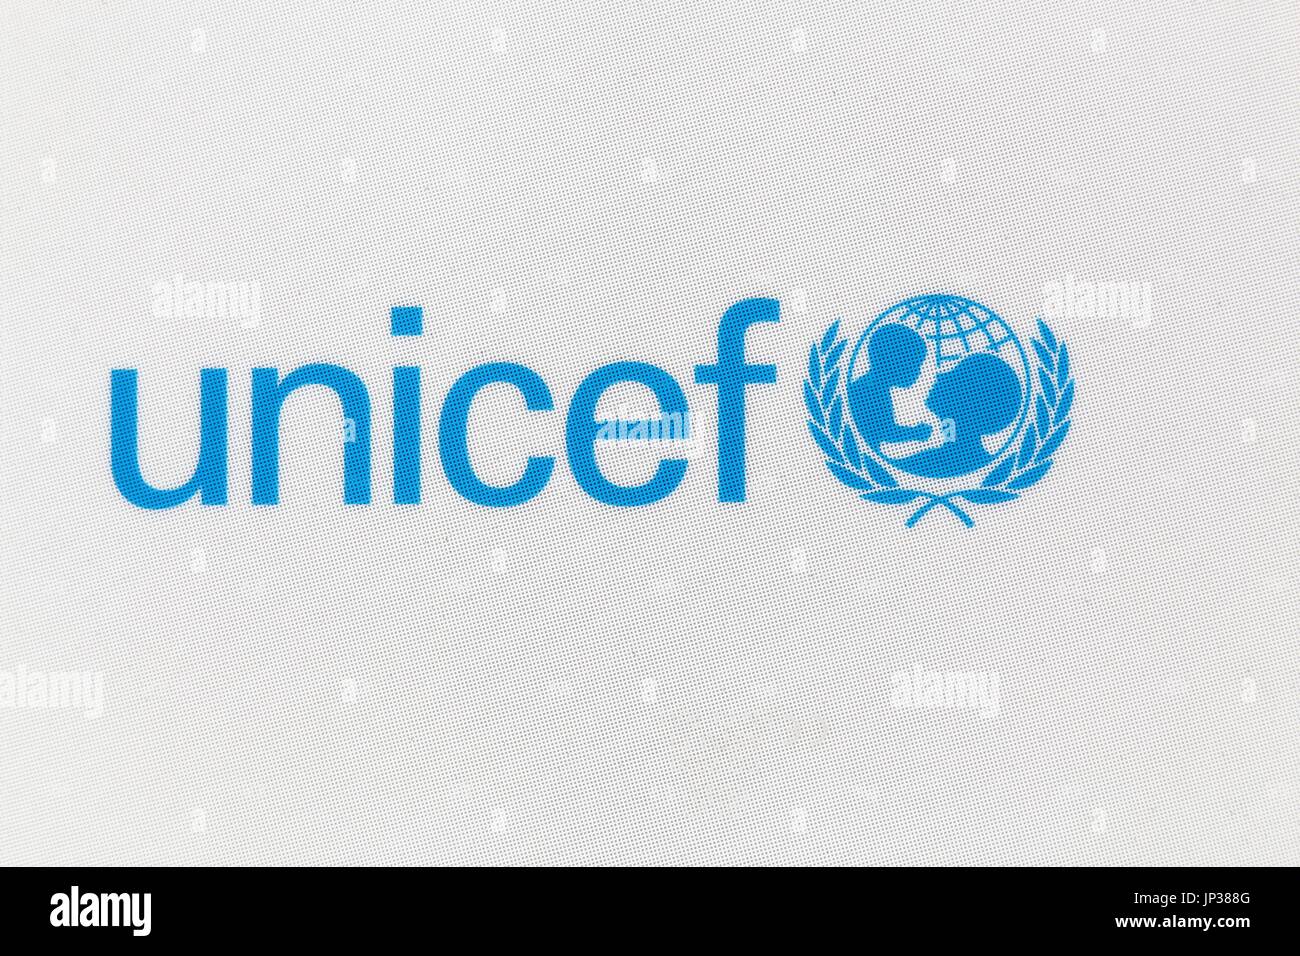 Villefranche, Frankreich, 11. Juni 2017: Unicef-Logo auf einem Panel. Stockfoto